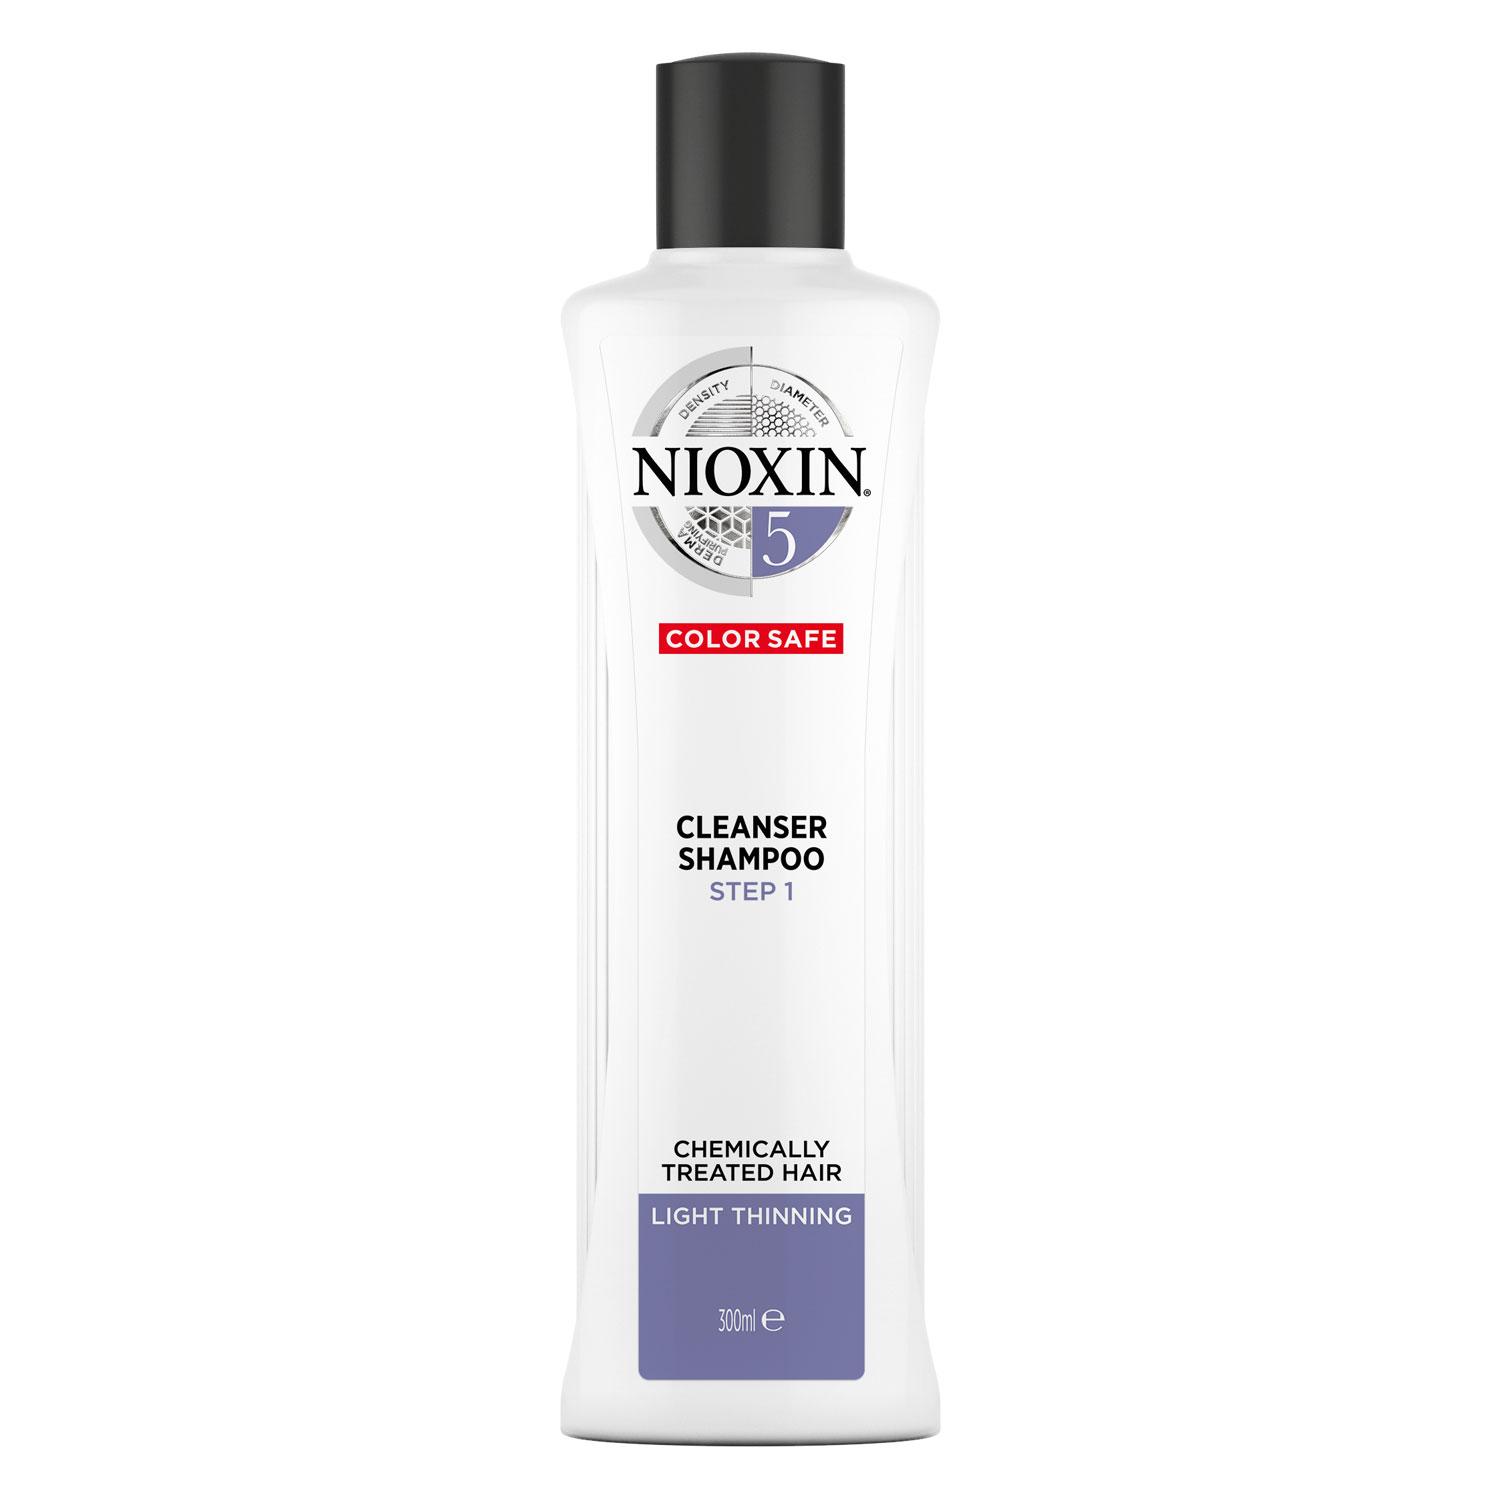 Nioxin - Cleanser Shampoo 5 